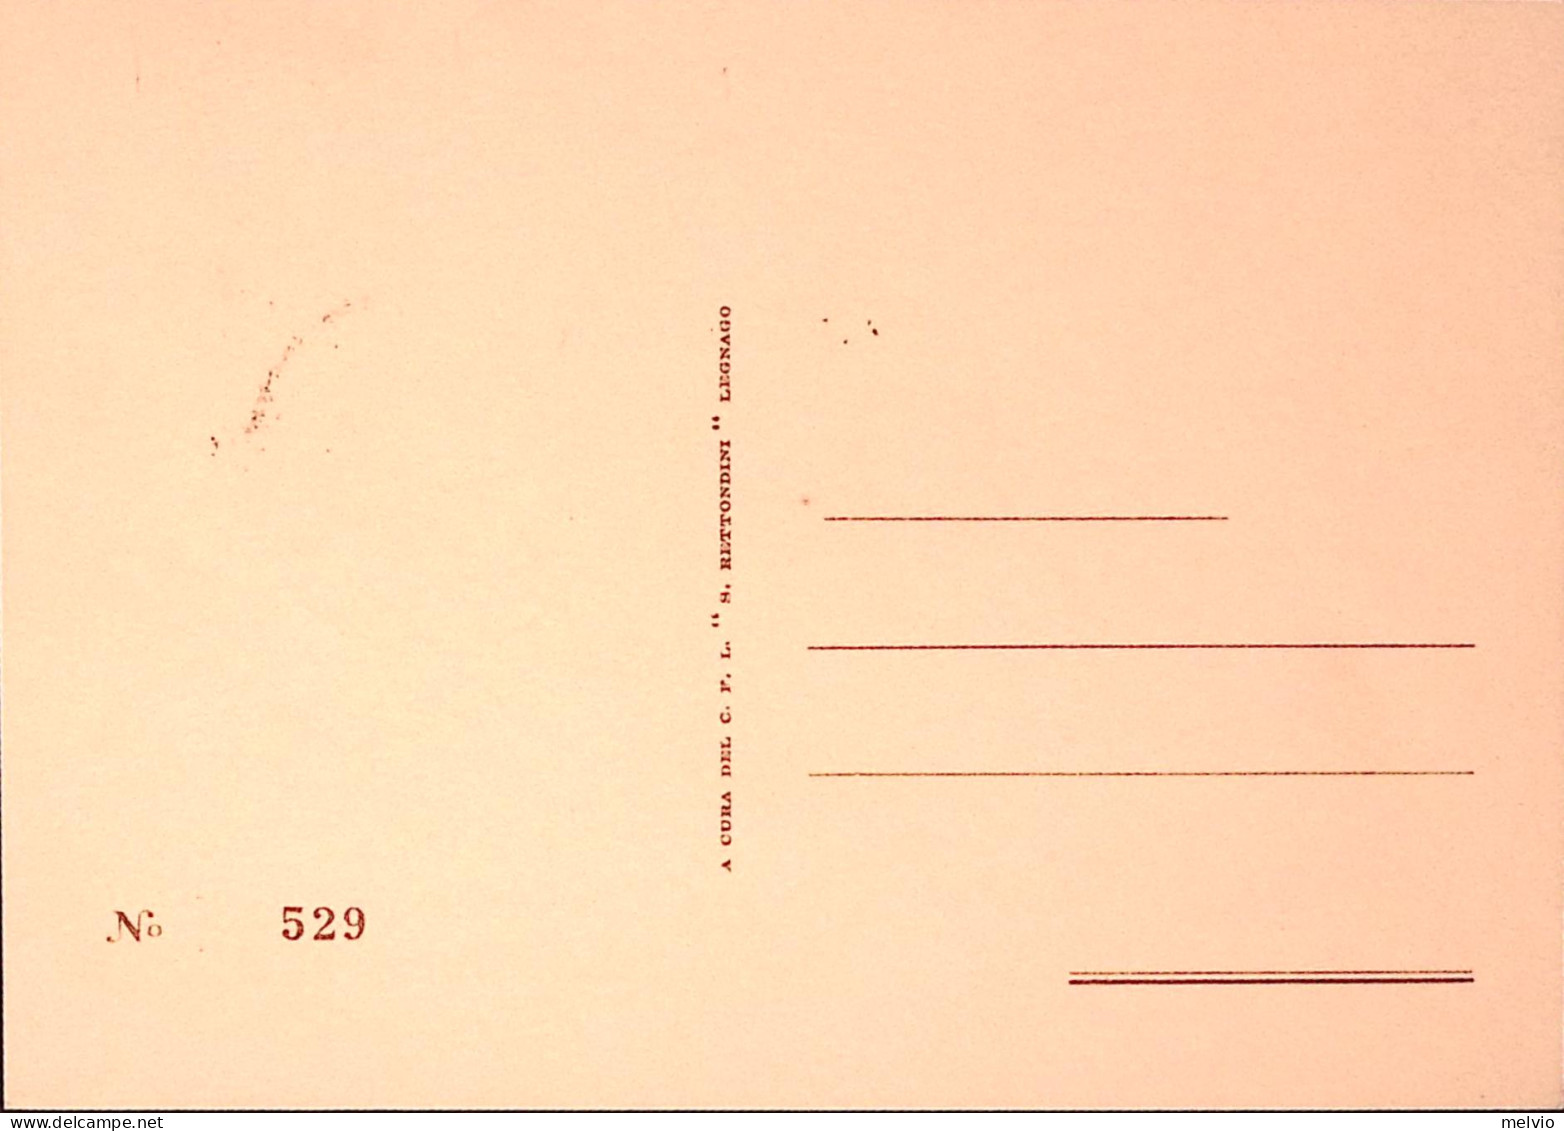 1967-MOSTRA MOBILE D'ARTE/CEREA Annullo Speciale (24.9) Su Cartolina Ufficiale - 1961-70: Storia Postale